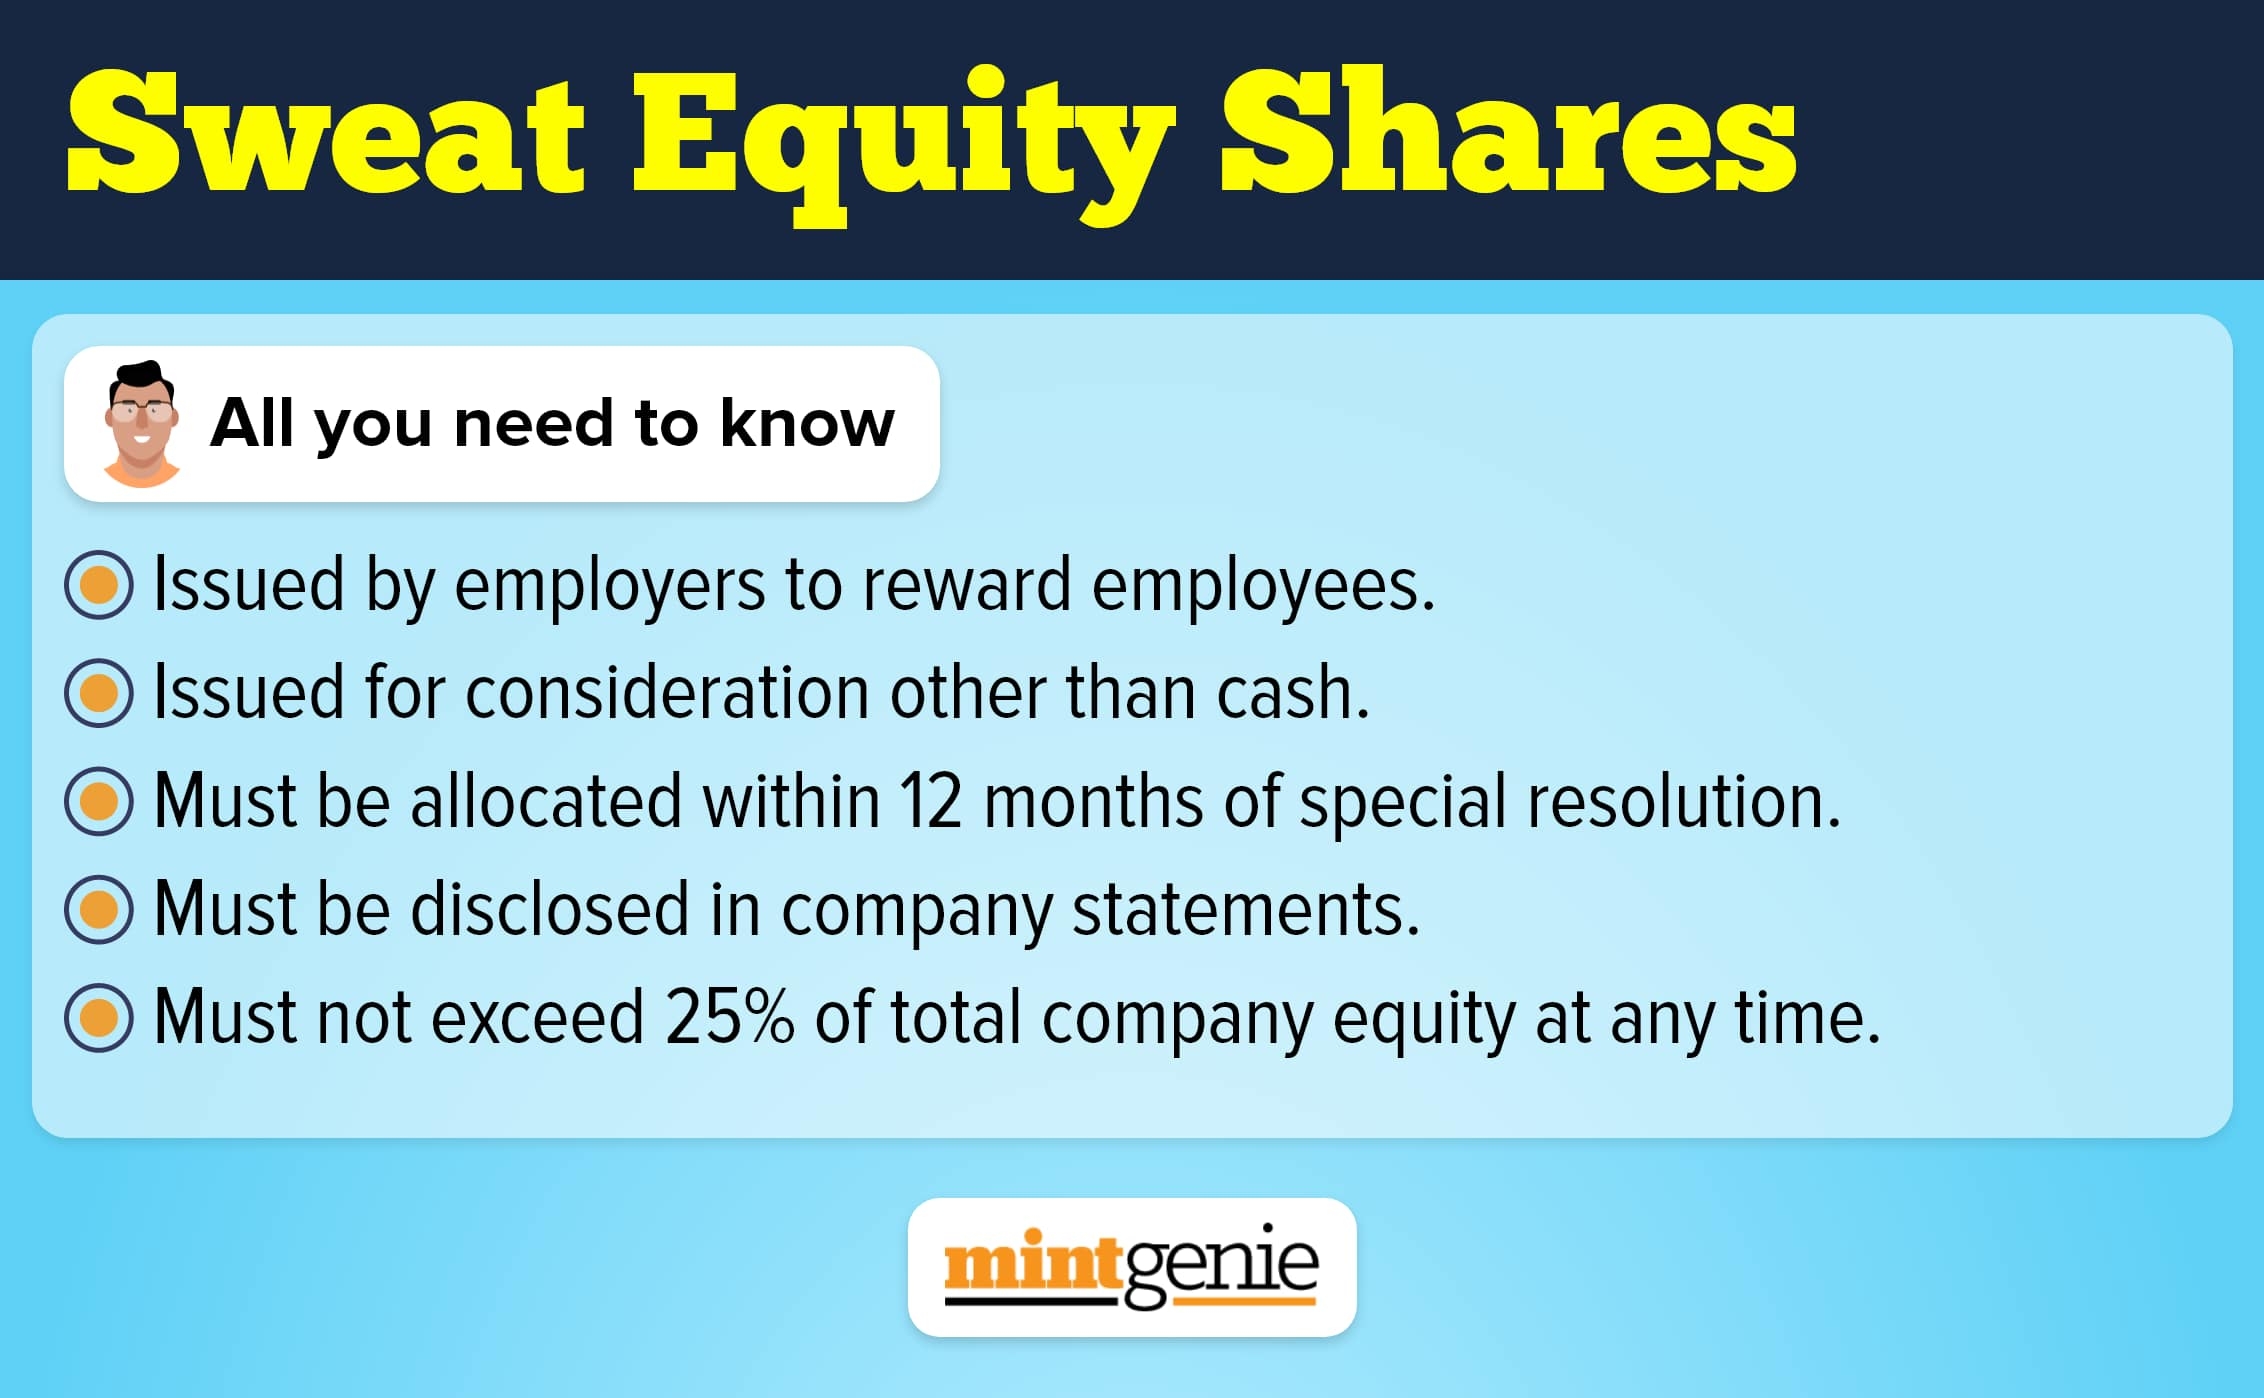 Understanding sweat equity shares